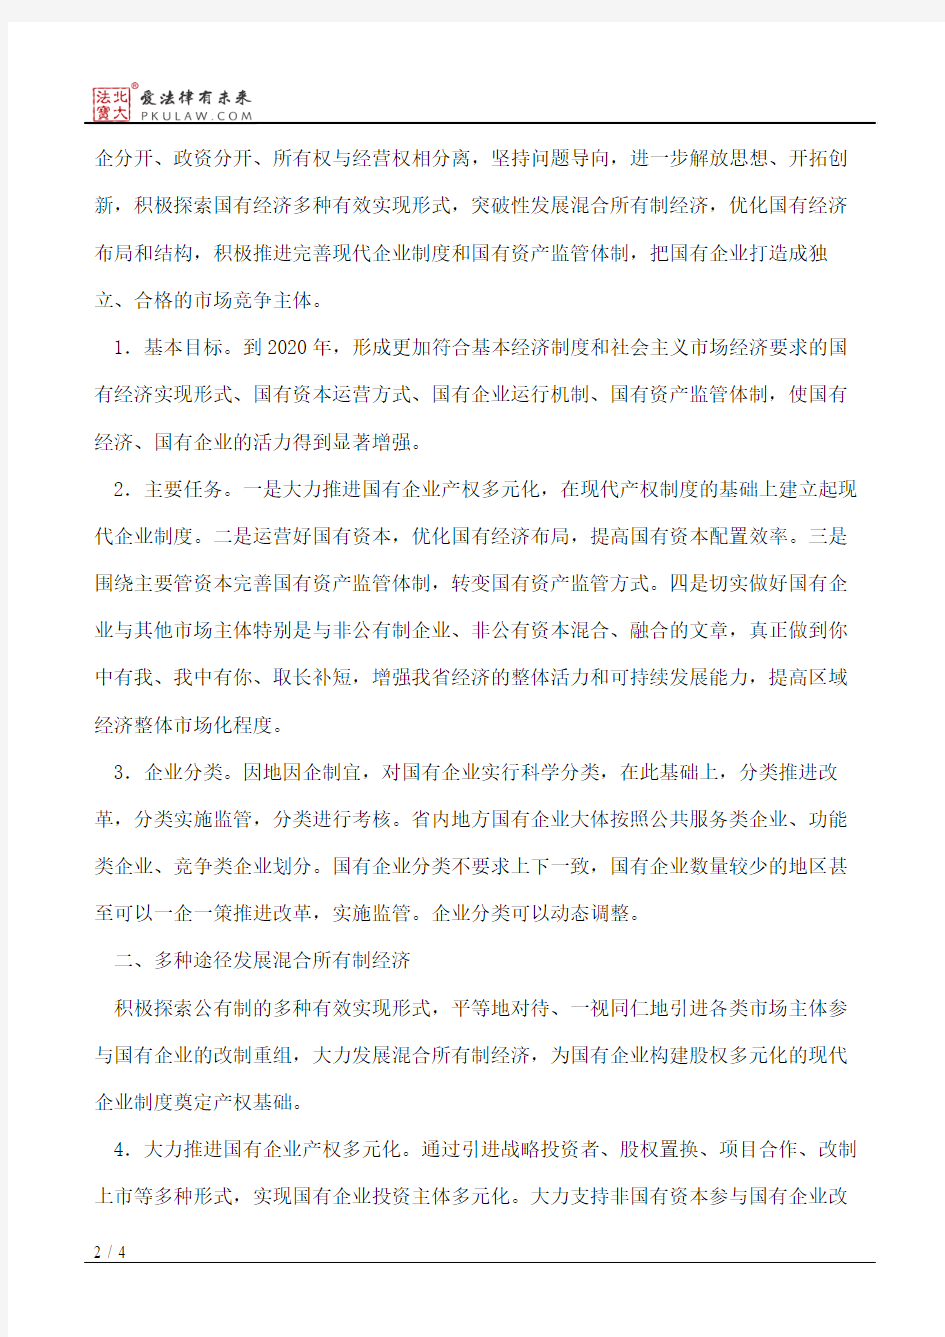 中共湖北省委、湖北省人民政府关于深化国有企业改革的意见